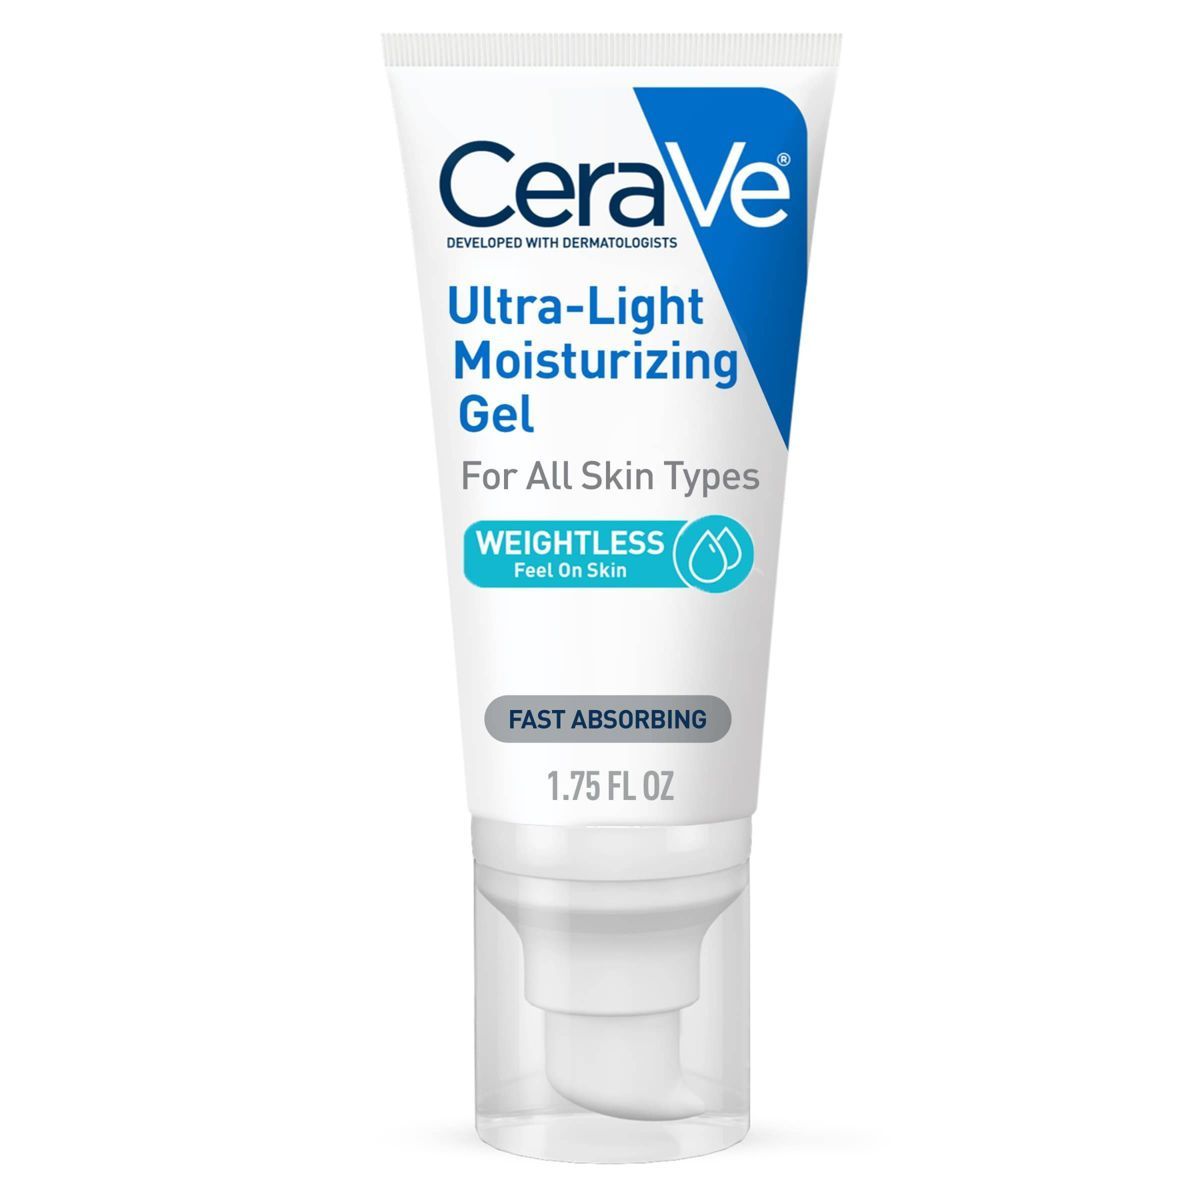 CeraVe Ultra-Light Moisturizing Face Gel - 1.75 fl oz | Target